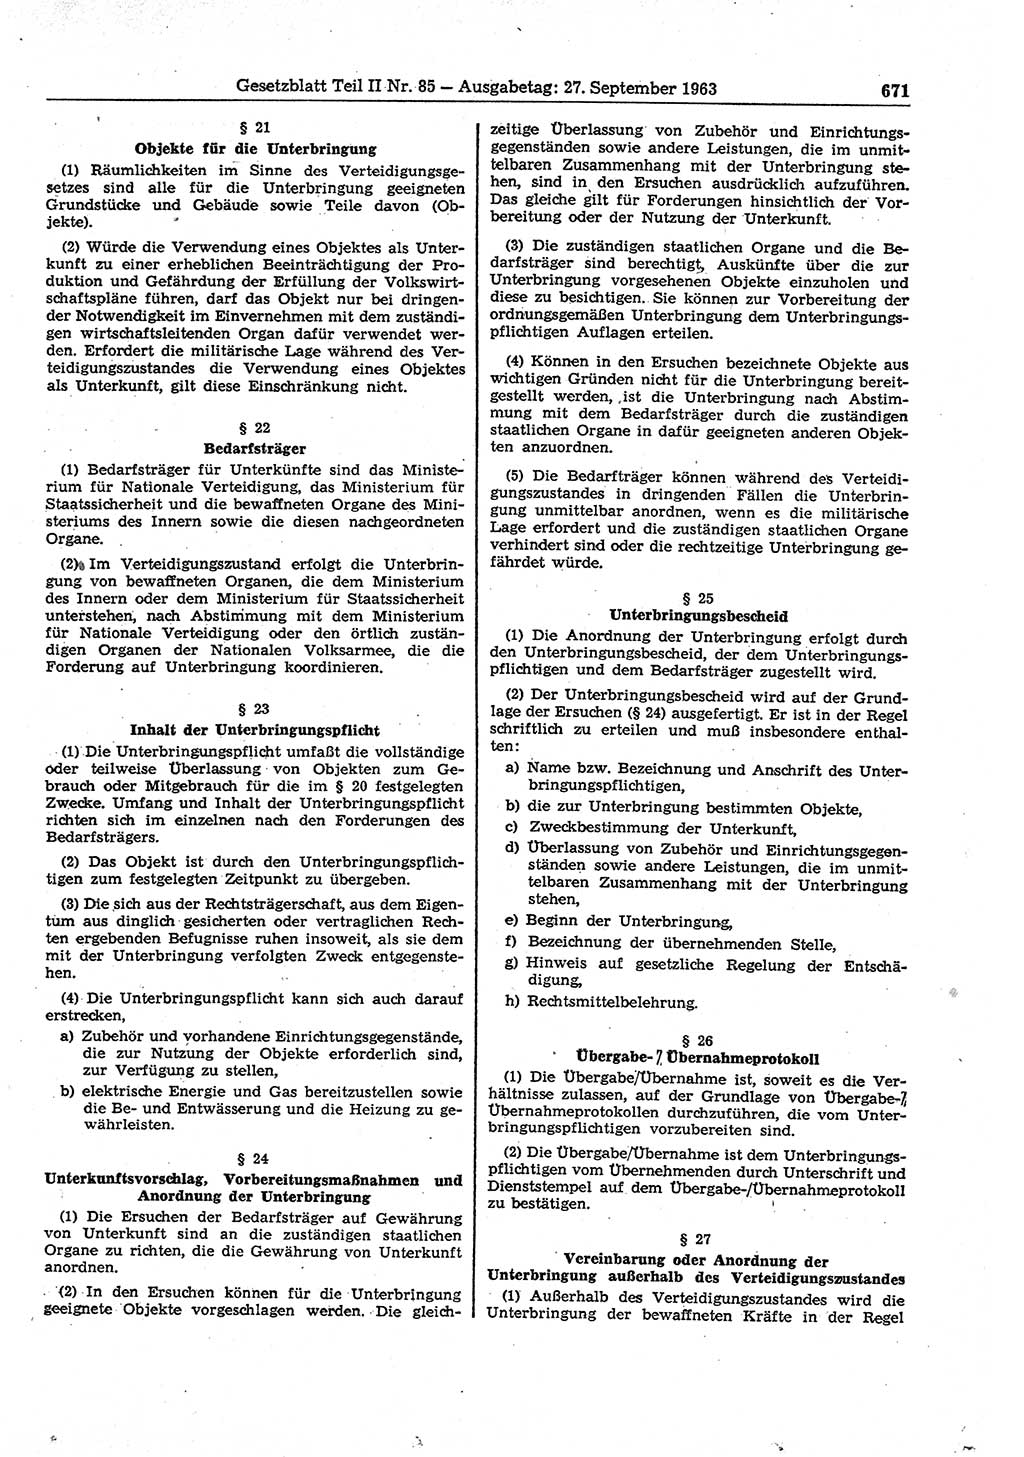 Gesetzblatt (GBl.) der Deutschen Demokratischen Republik (DDR) Teil ⅠⅠ 1963, Seite 671 (GBl. DDR ⅠⅠ 1963, S. 671)